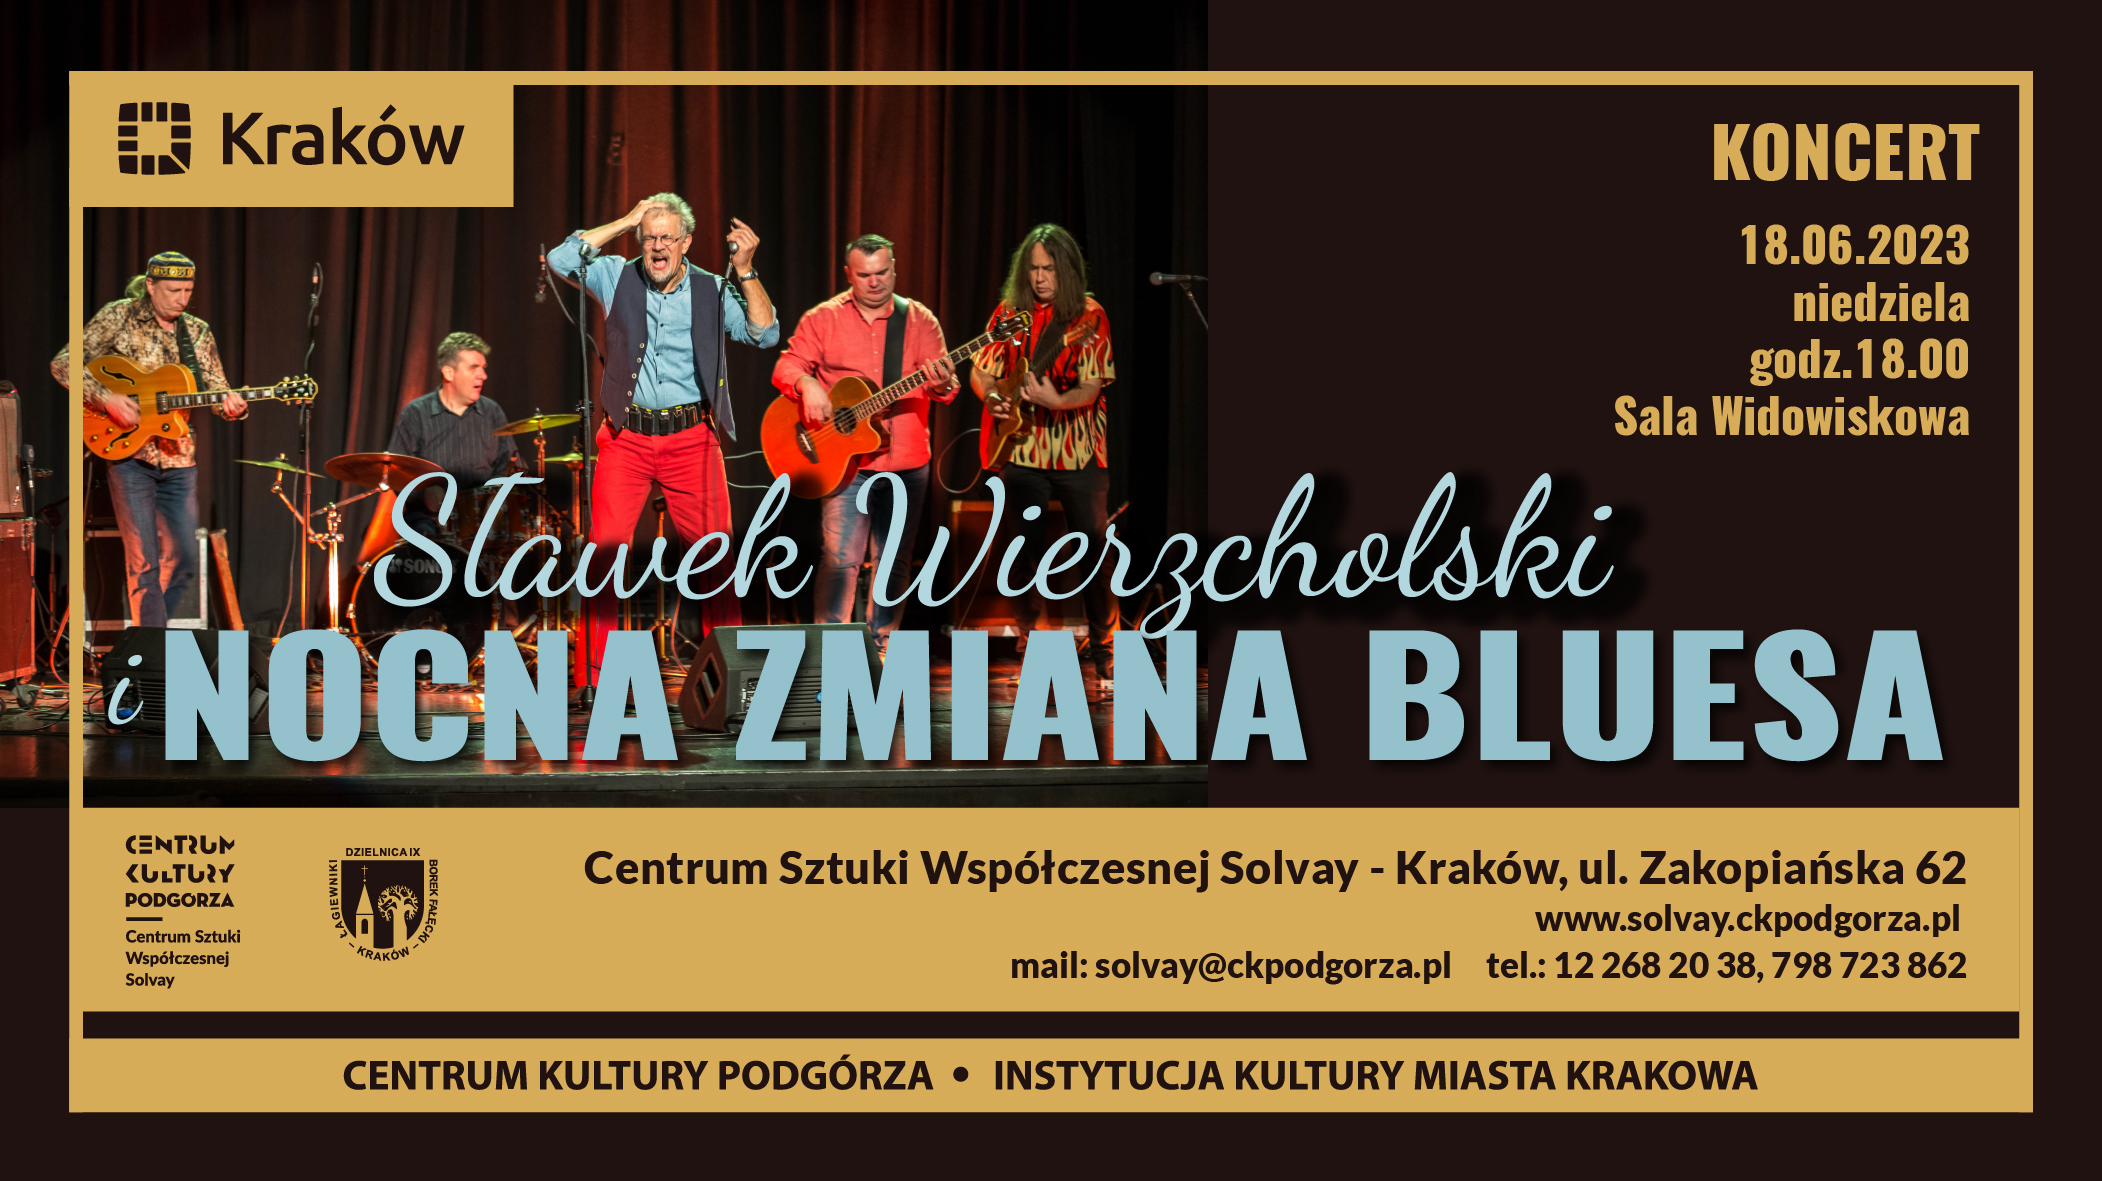 nocna zmiana bluesa baner fb 2102x1181px - Koncert Sławek Wierzcholski i Nocna Zmiana Bluesa